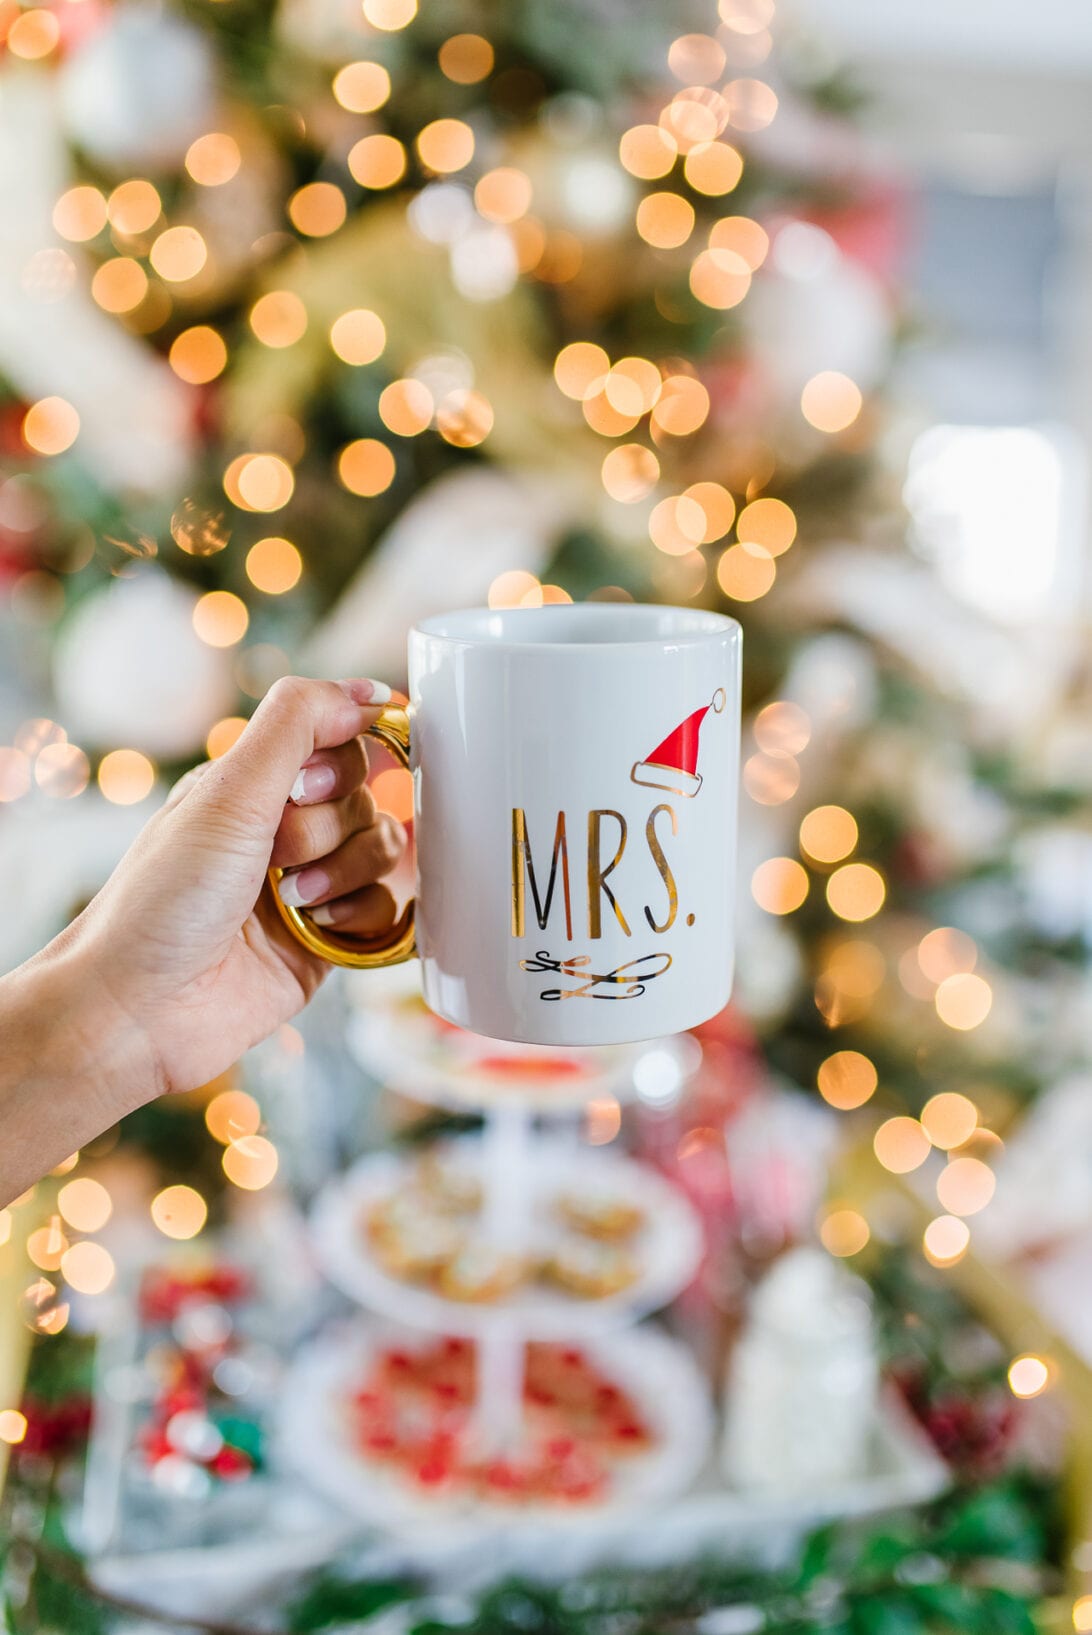 Mrs. Santa mug